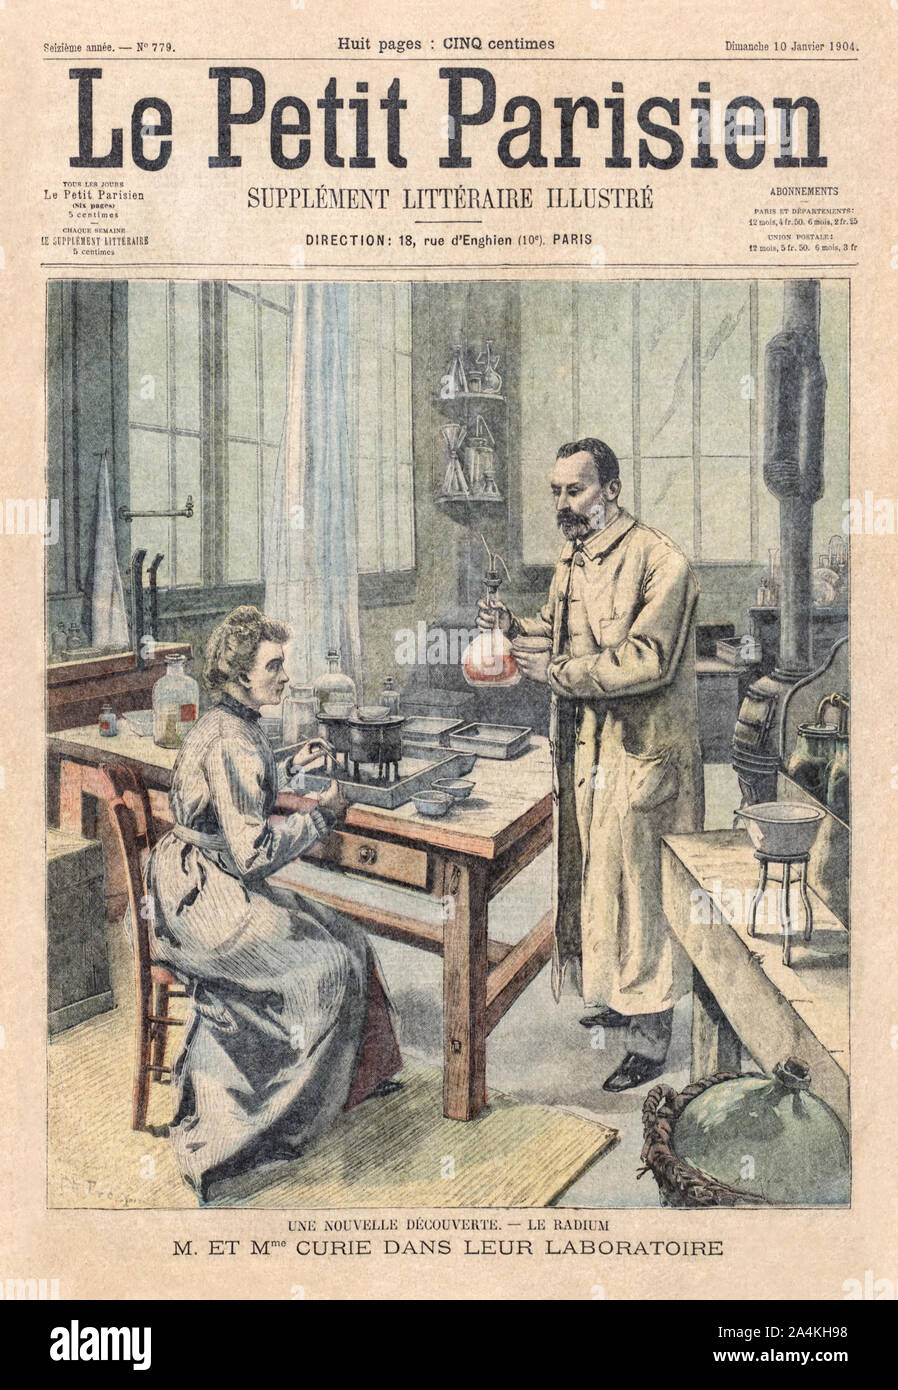 Marie Curie (1867-1934) und Pierre Curie (1859-1906) führen ein Experiment auf der Abdeckung des Le Petit Parisien Illustrierte literary supplement vom 10. Januar 1904 zu Ehren ihres gemeinsamen Gewinn der Nobelpreis für ihre bahnbrechende Forschung auf Radioaktivität kurz vor 1903. Marie Curie war die erste Frau, die einen Nobelpreis verliehen werden. Stockfoto